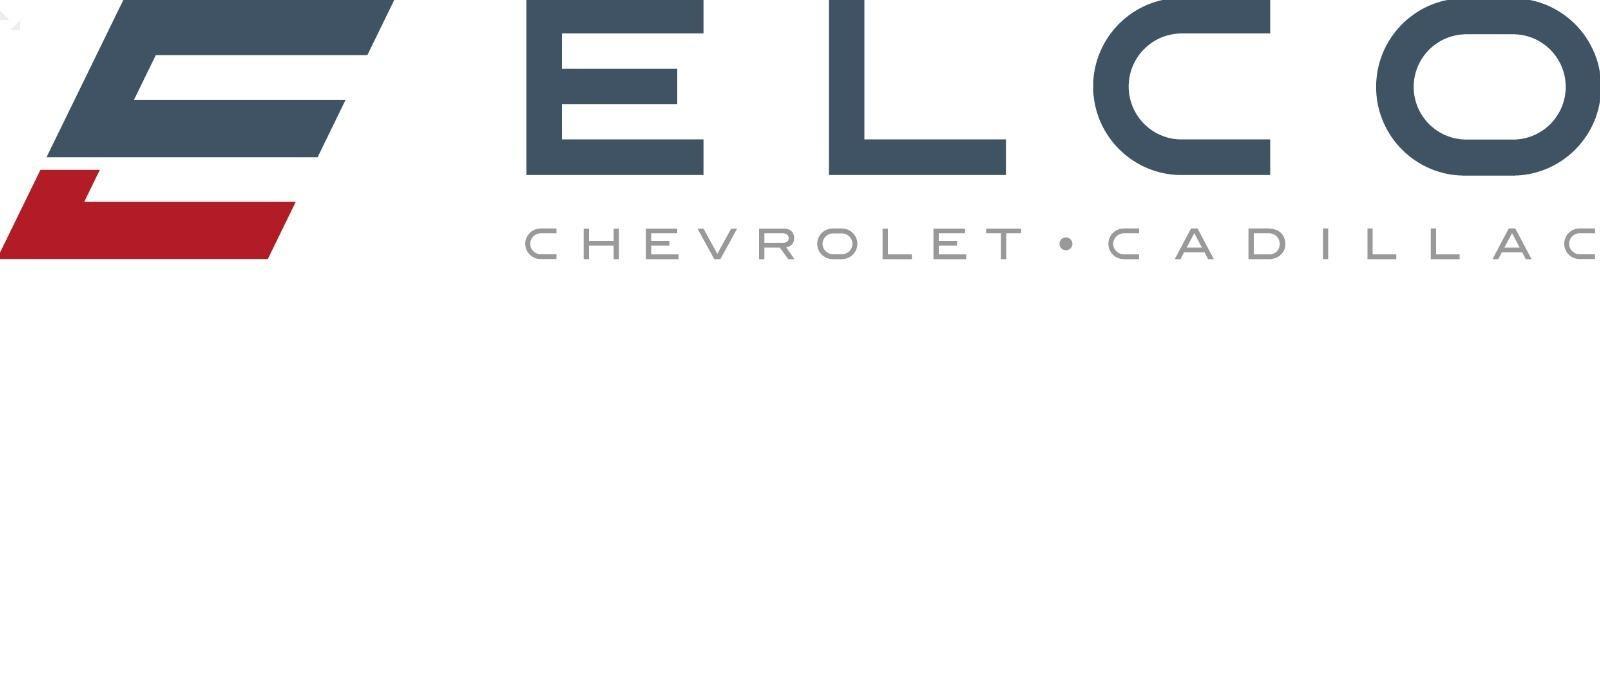 ELCO Chevrolet Cadillac